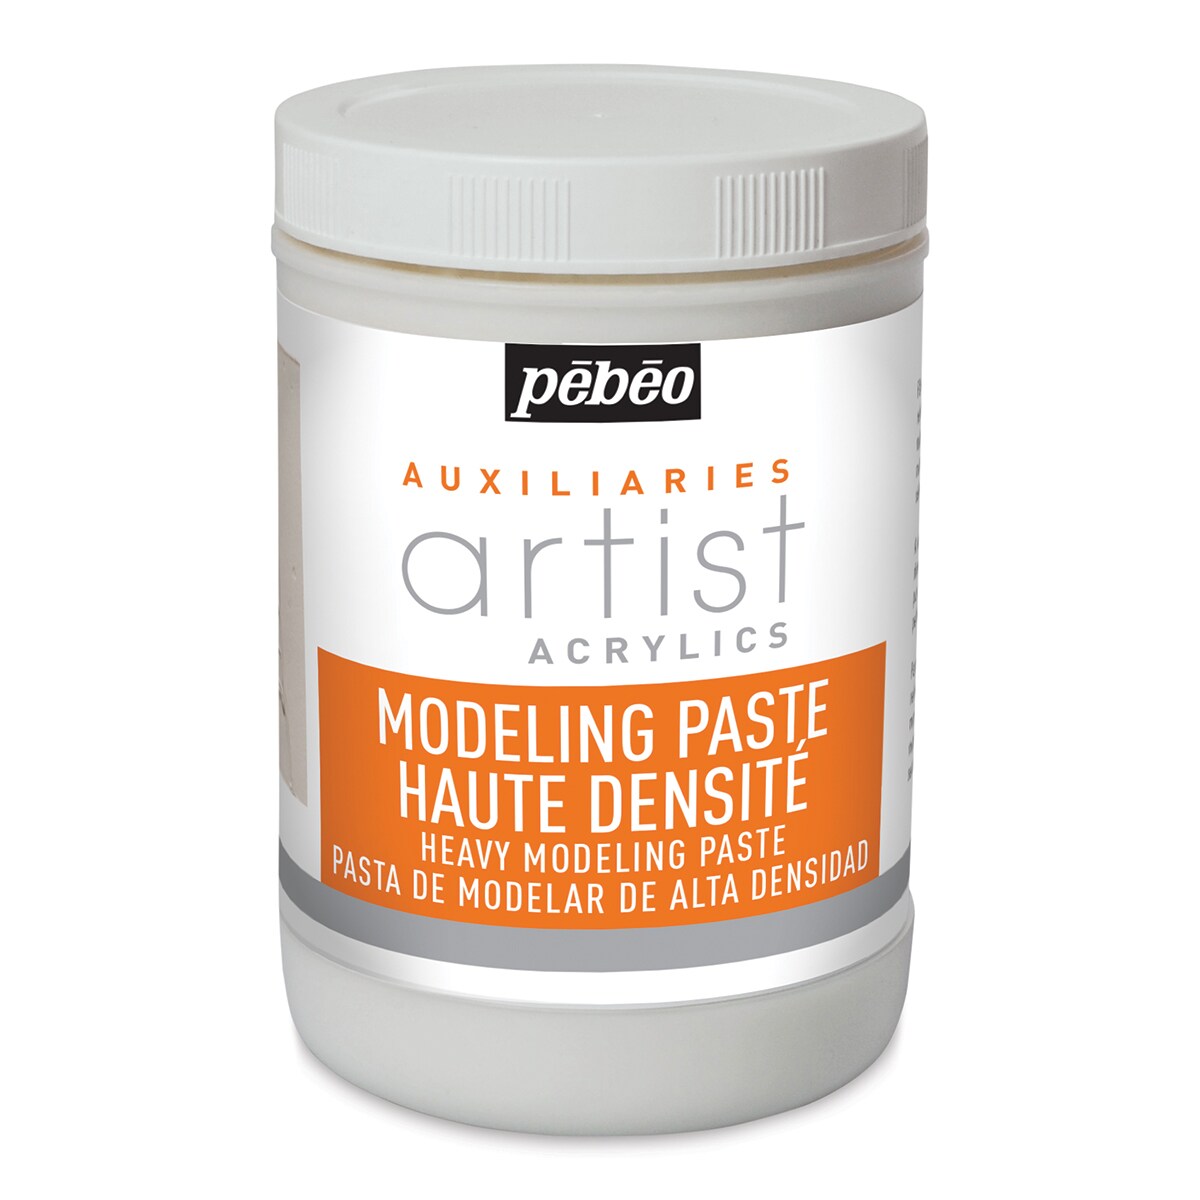 Pebeo Modeling Paste - 1 liter bottle